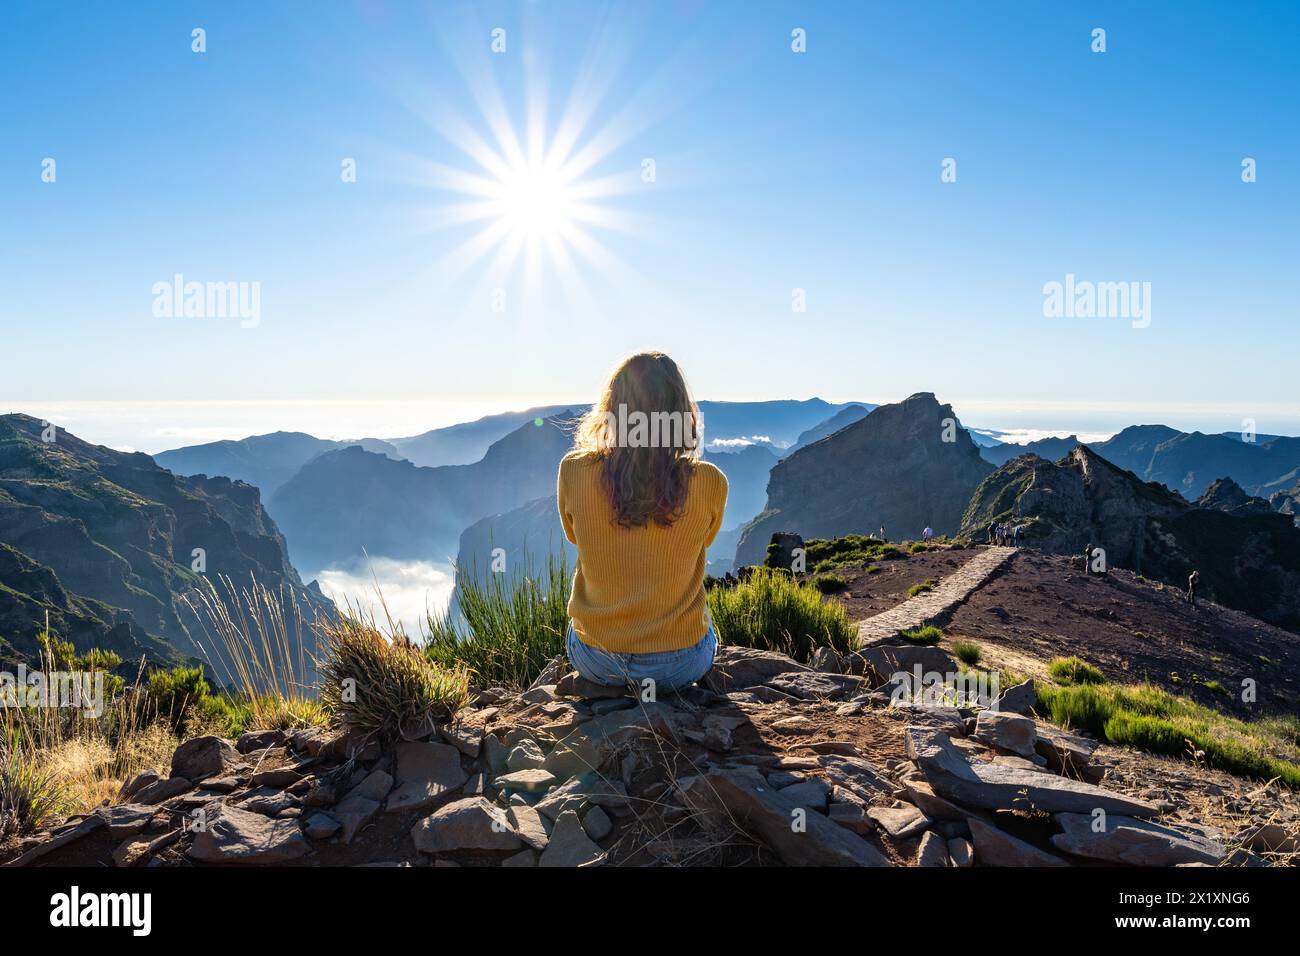 Beschreibung: Eine weibliche Toruistin sitzt auf einem Berg und genießt an einem sonnigen Sommernachmittag den Panoramablick über eine Vulkaninsel. Pico Do Stockfoto